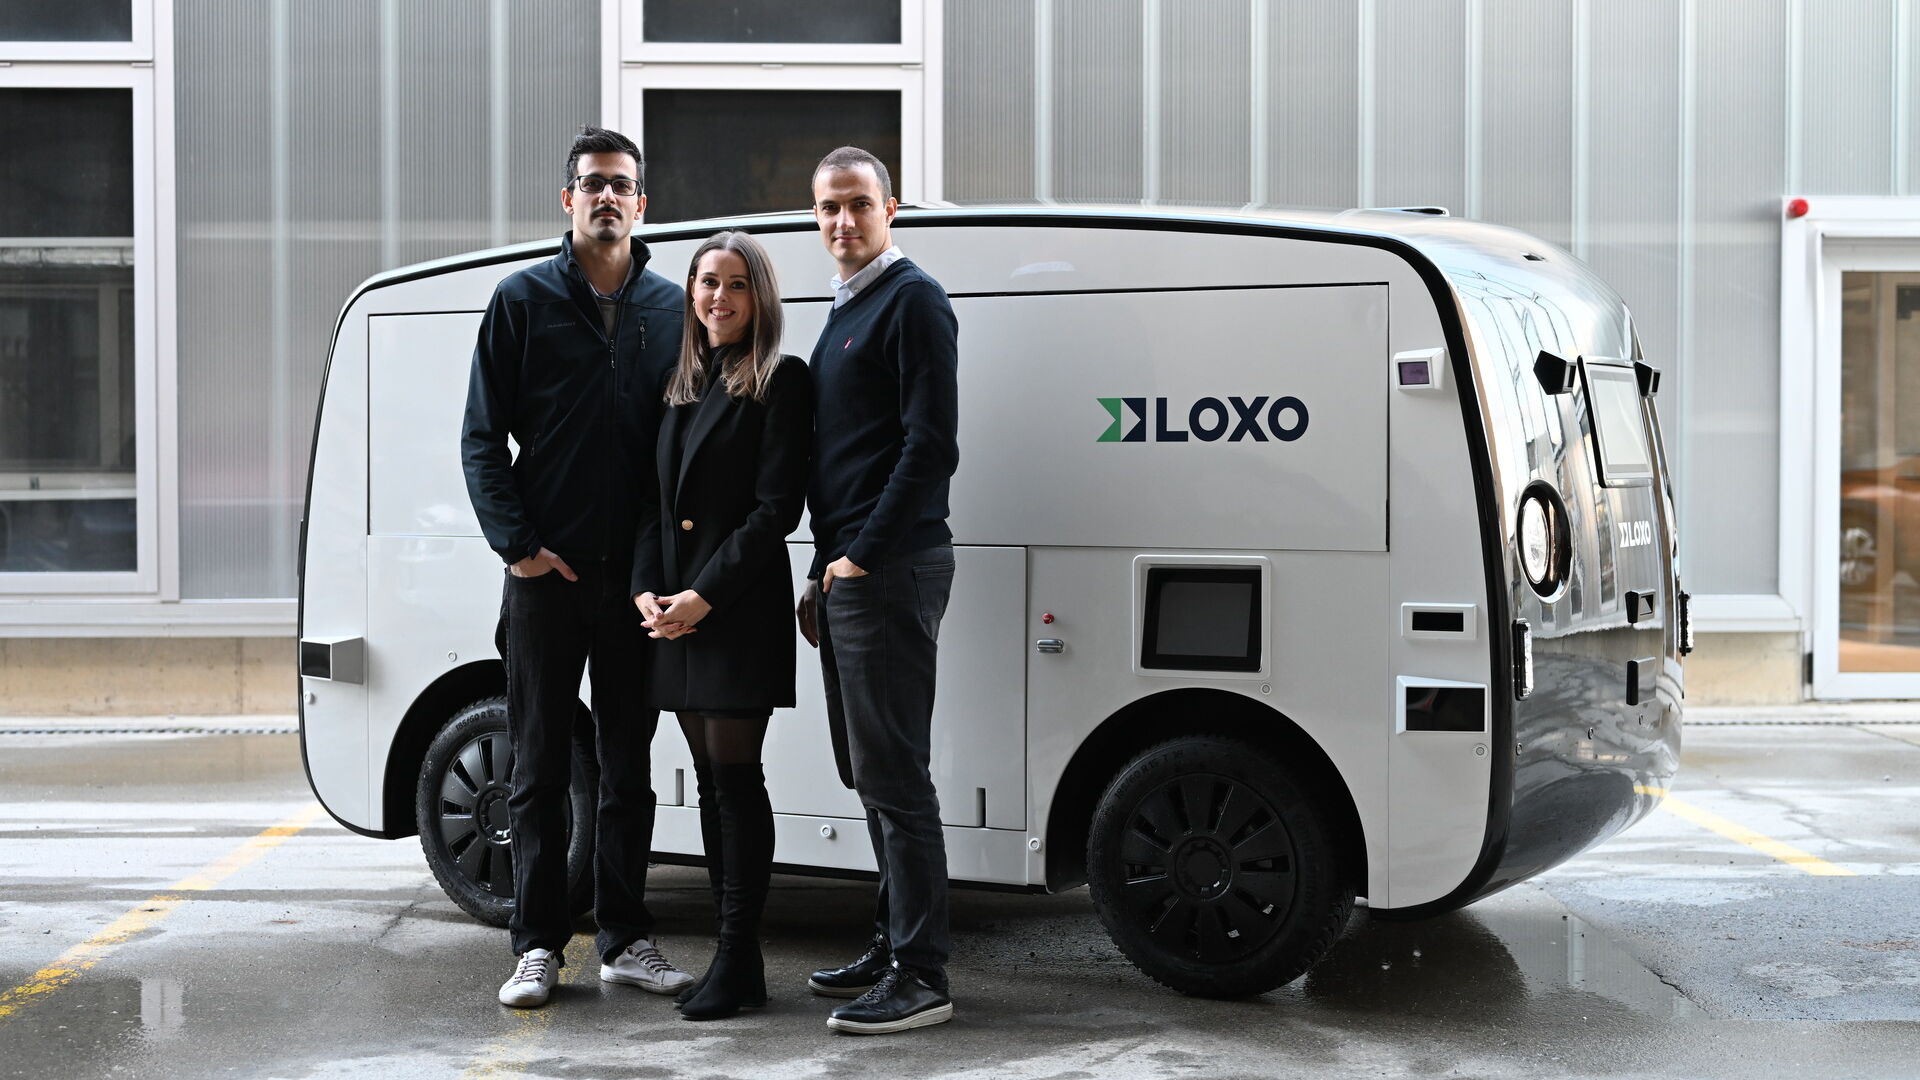 LOXO: Amin Amini, Lara Amini-Rentsch và Claudio Panizza, những người sáng lập LOXO khởi nghiệp ở Bern, đã chế tạo Alpha hoàn toàn ở Thụy Sĩ, một chiếc xe tải tự lái để giao hàng trong thời gian ngắn